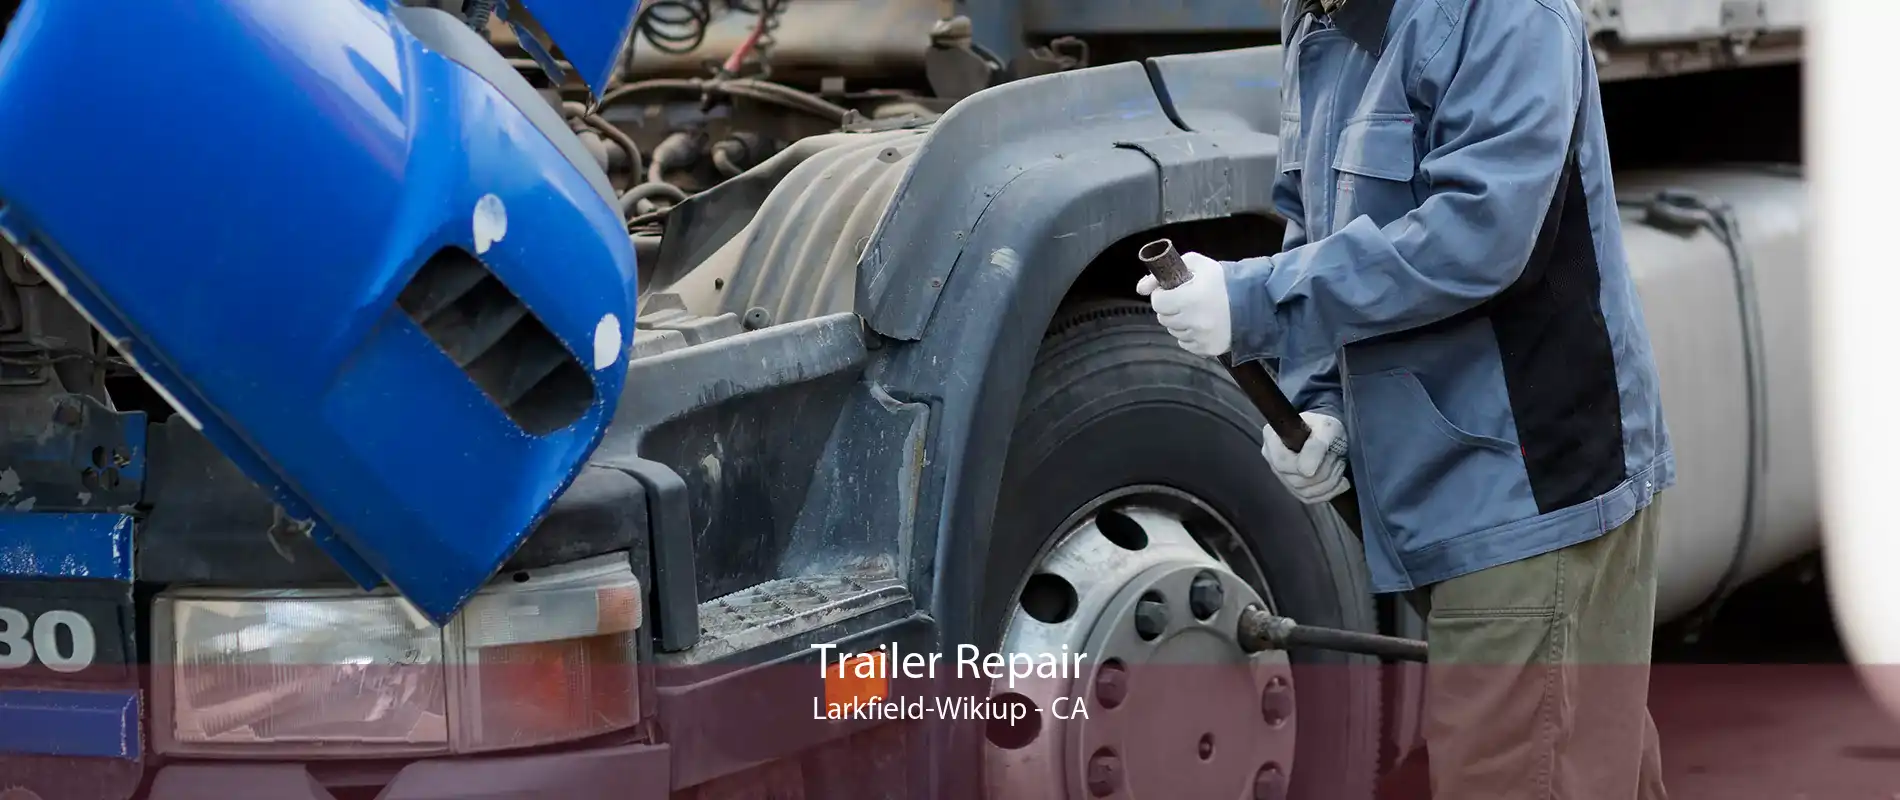 Trailer Repair Larkfield-Wikiup - CA